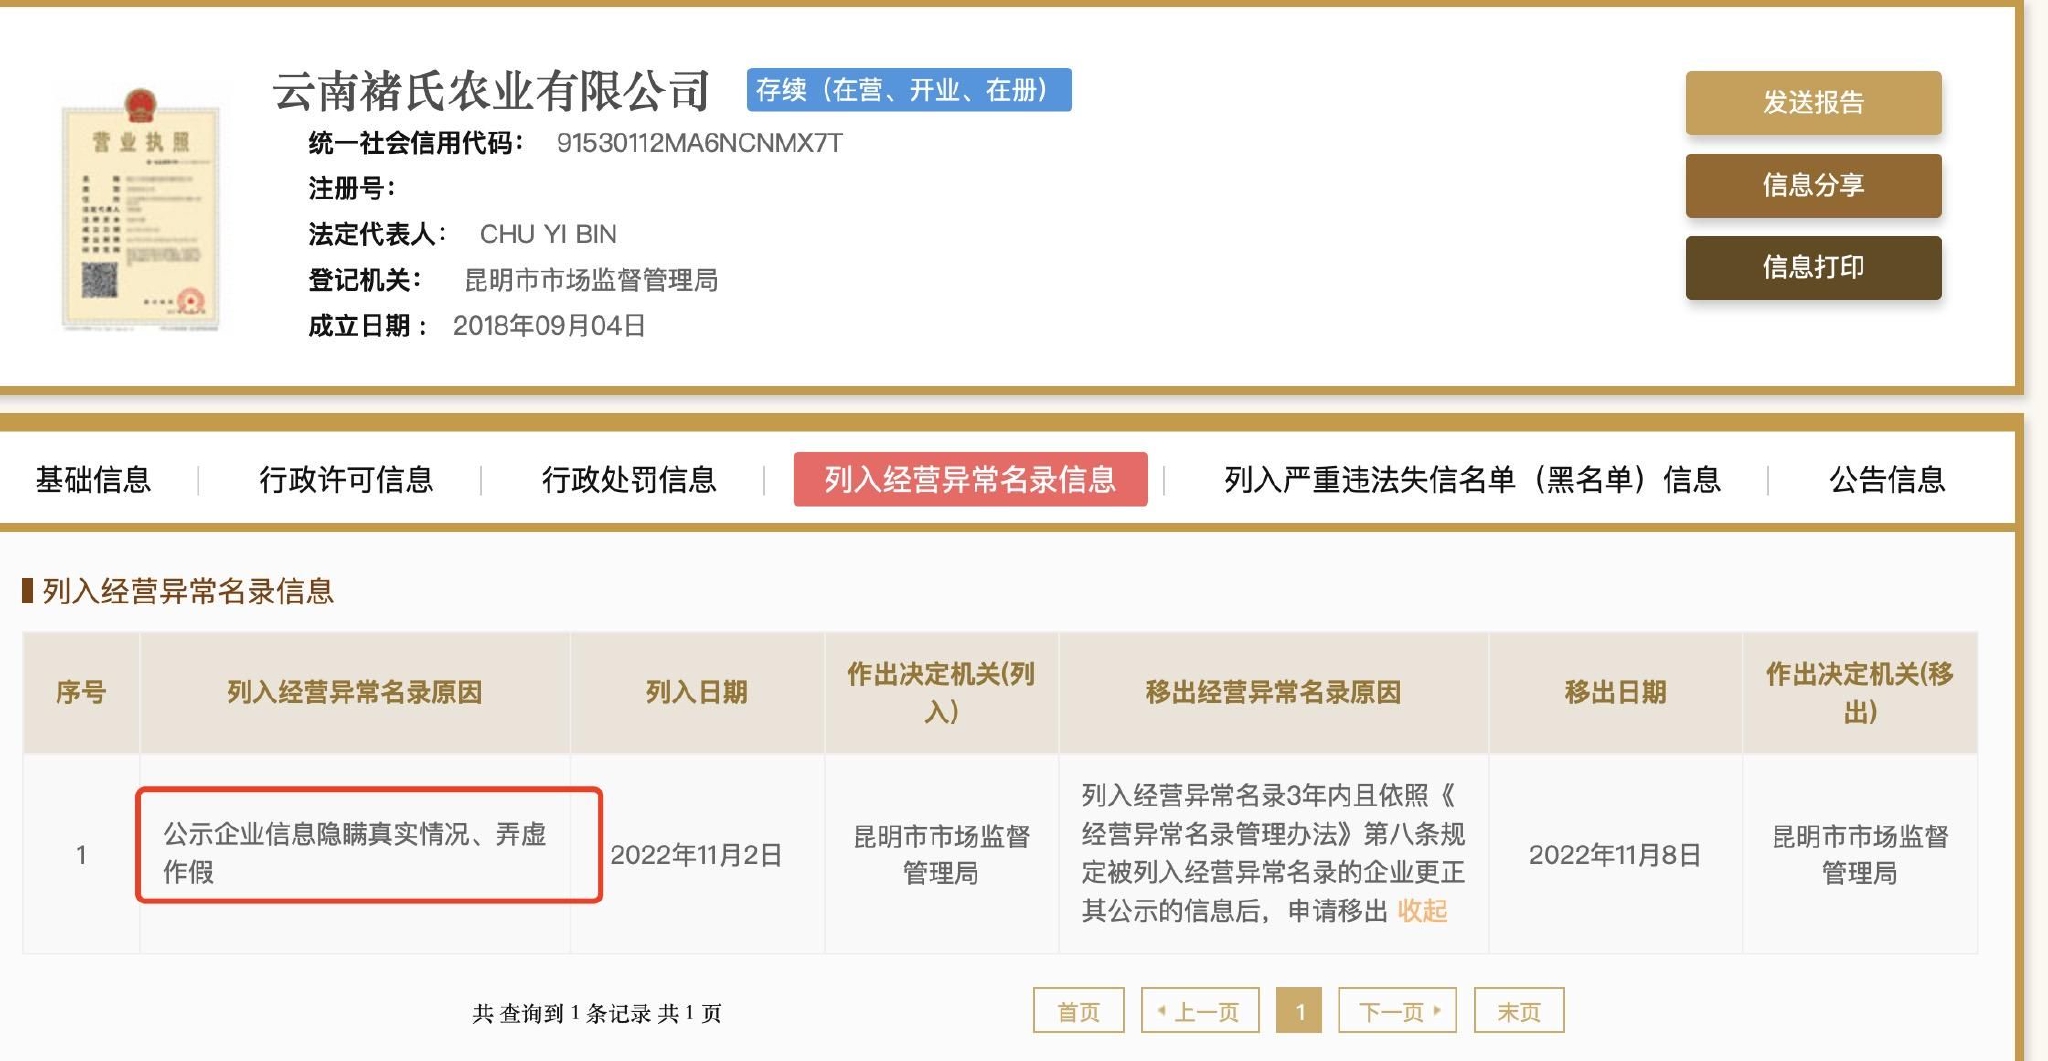 云南褚氏农业公司被列入经营异常名录信息。国家企业信用信息公示系统官网截图